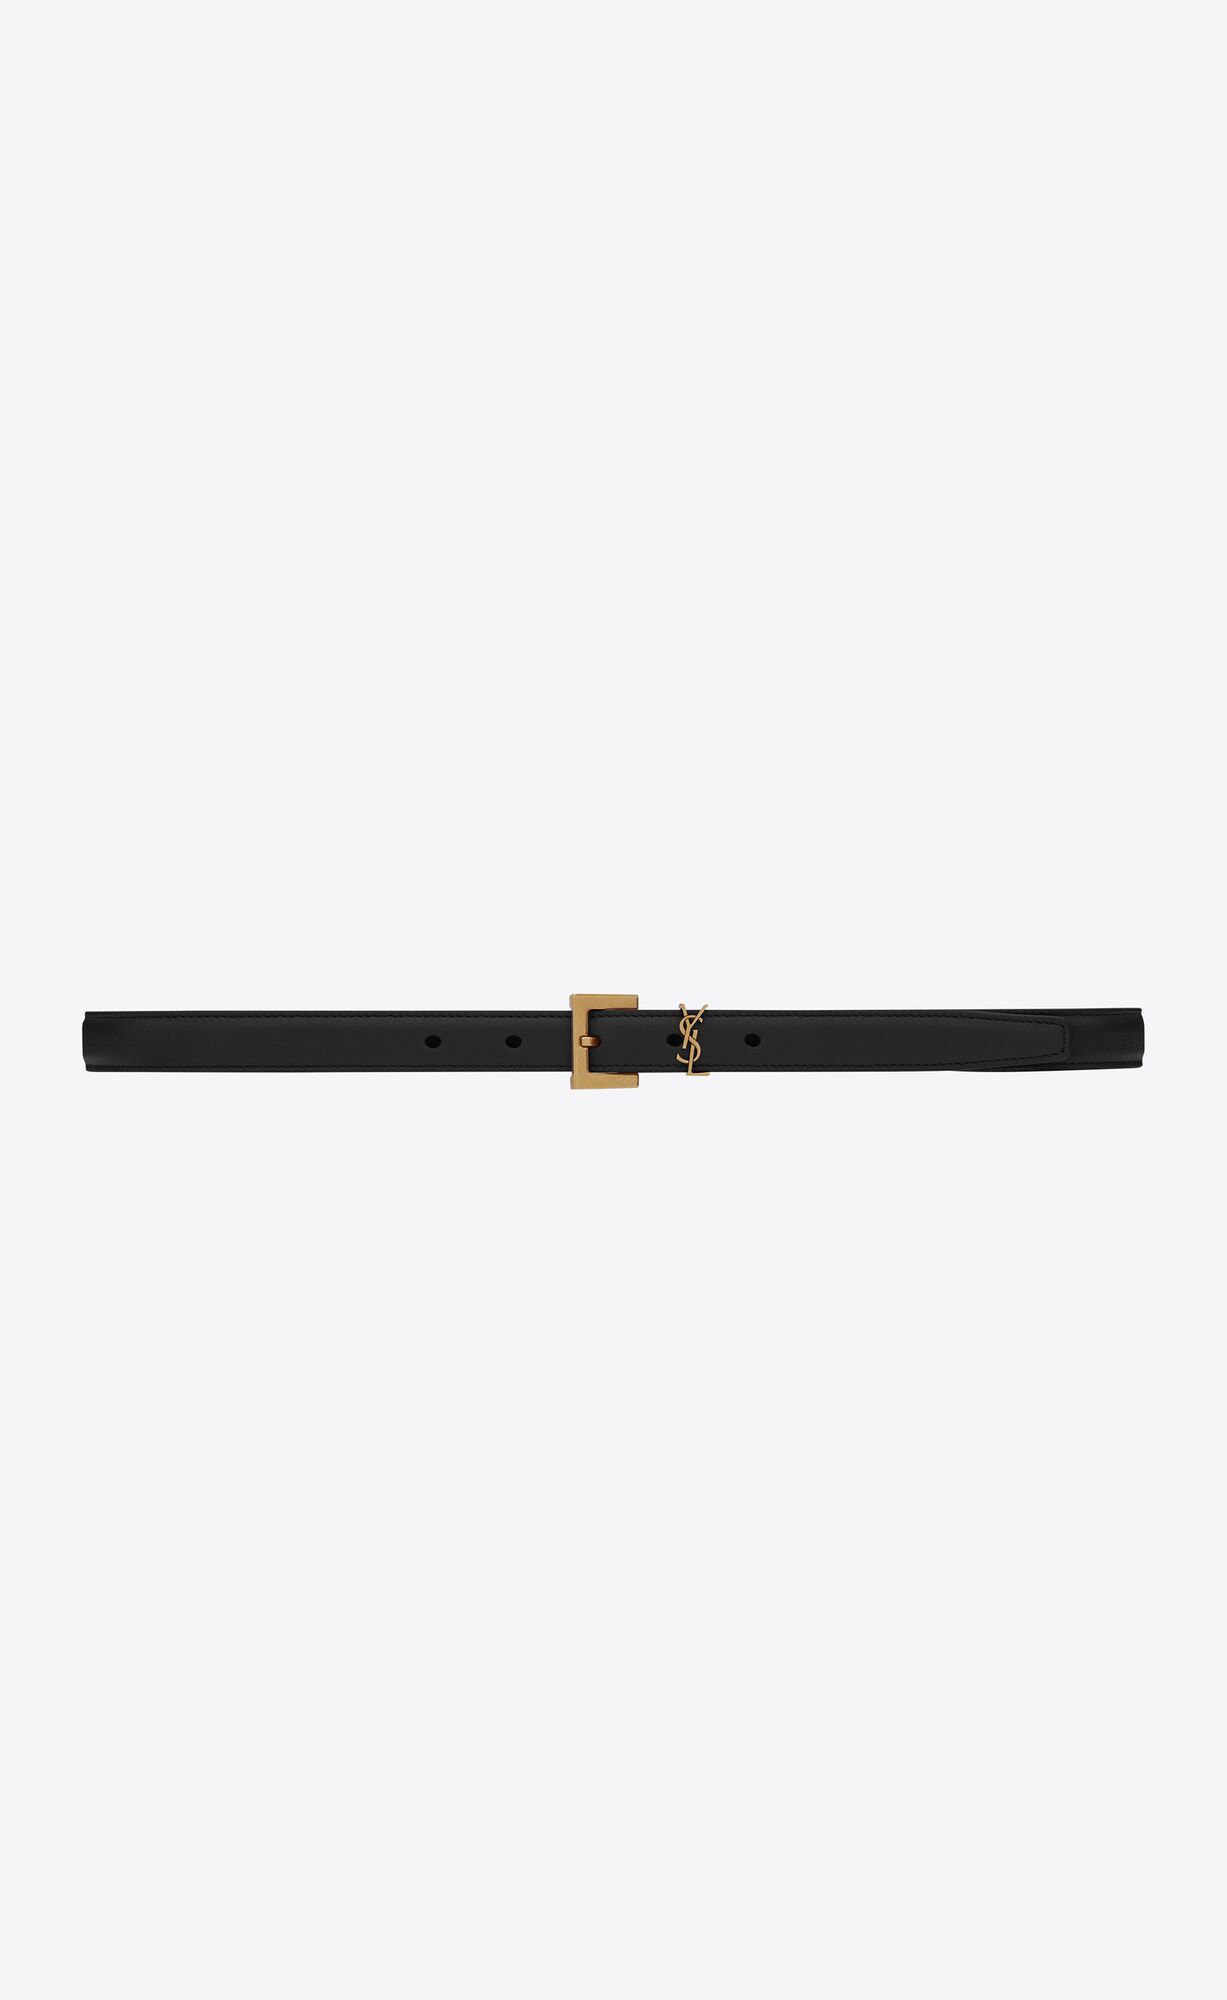 cassandre thin belt with square buckle in box saint laurent leather | Saint Laurent Inc. (Global)